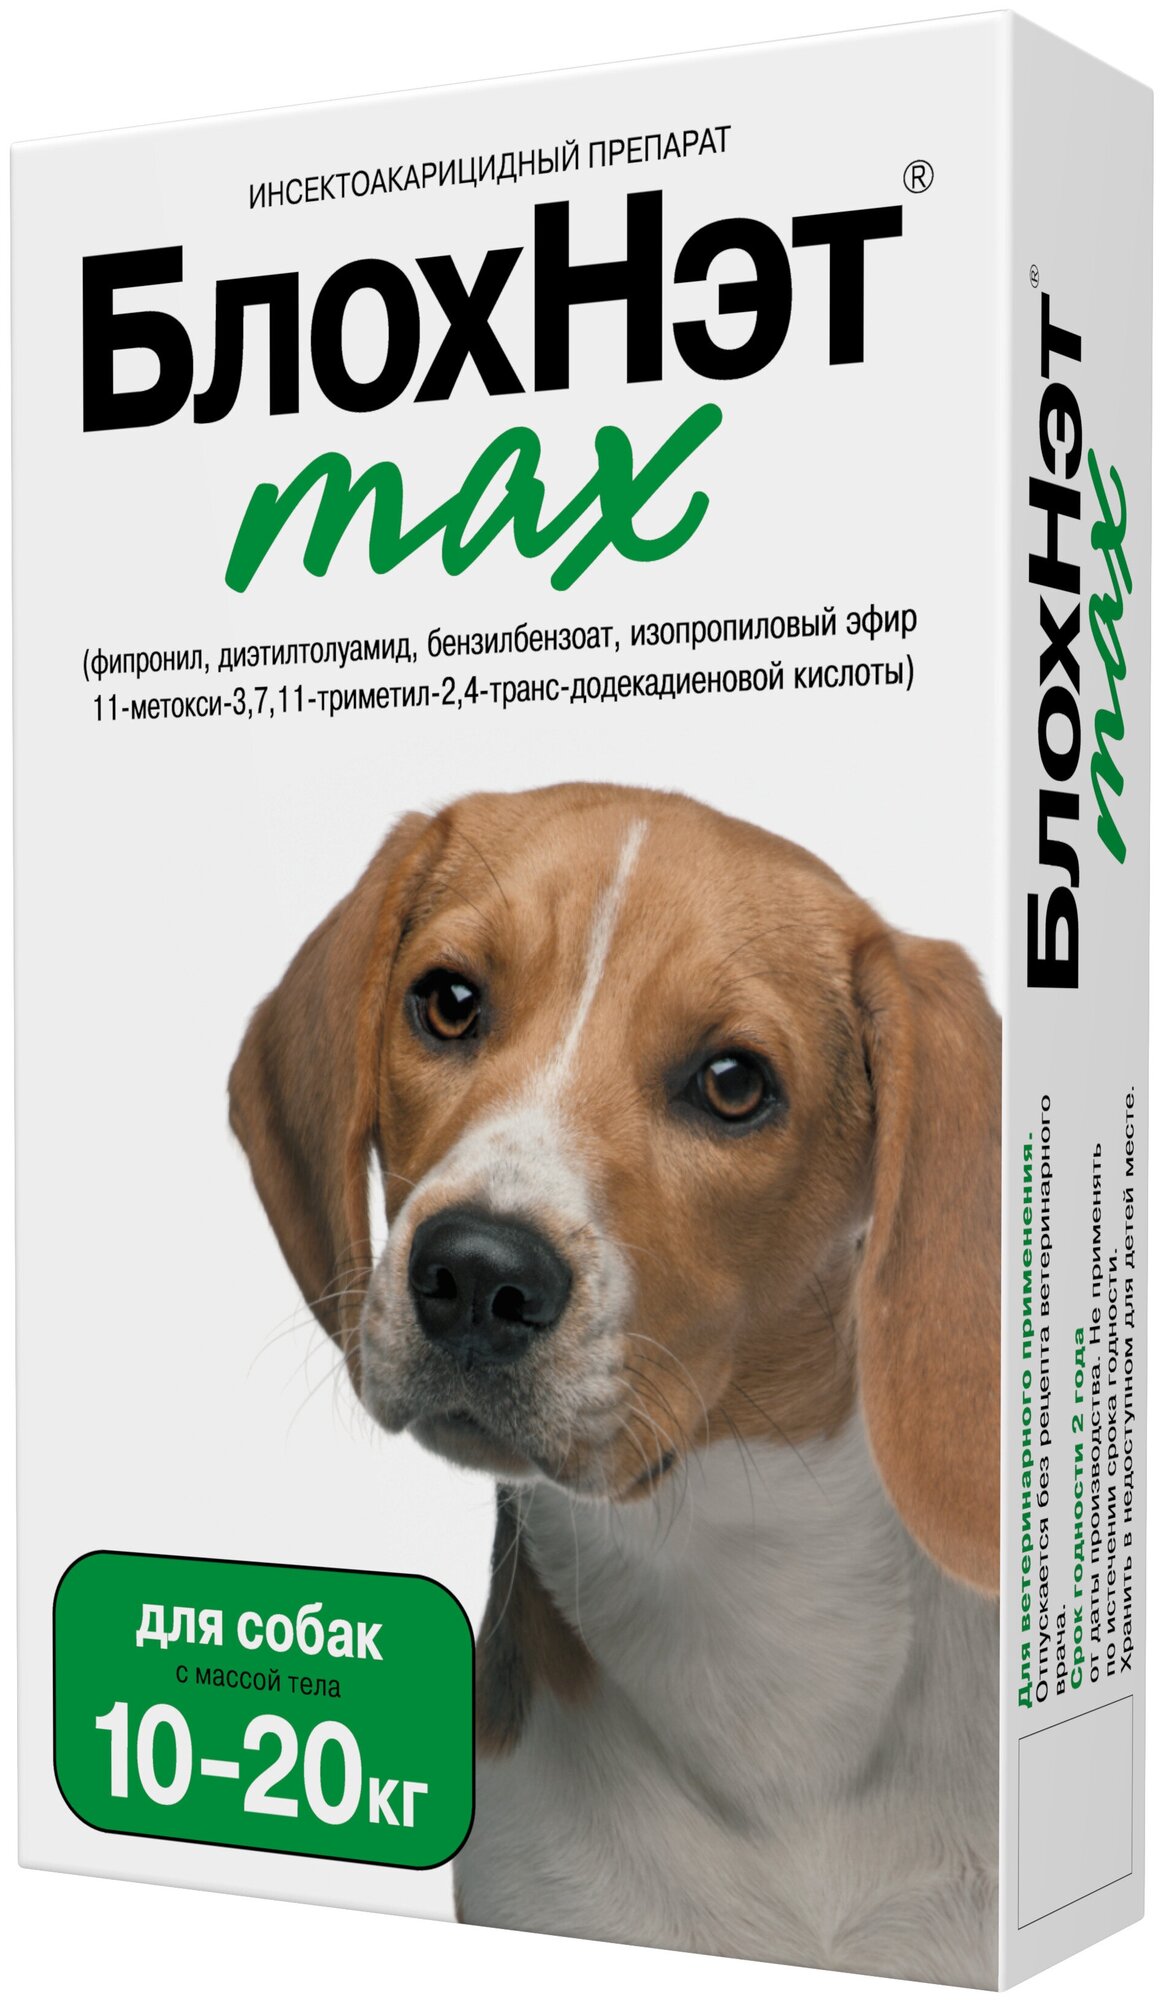 Астрафарм капли от блох и клещей БлохНэт max для собак 10-20 кг